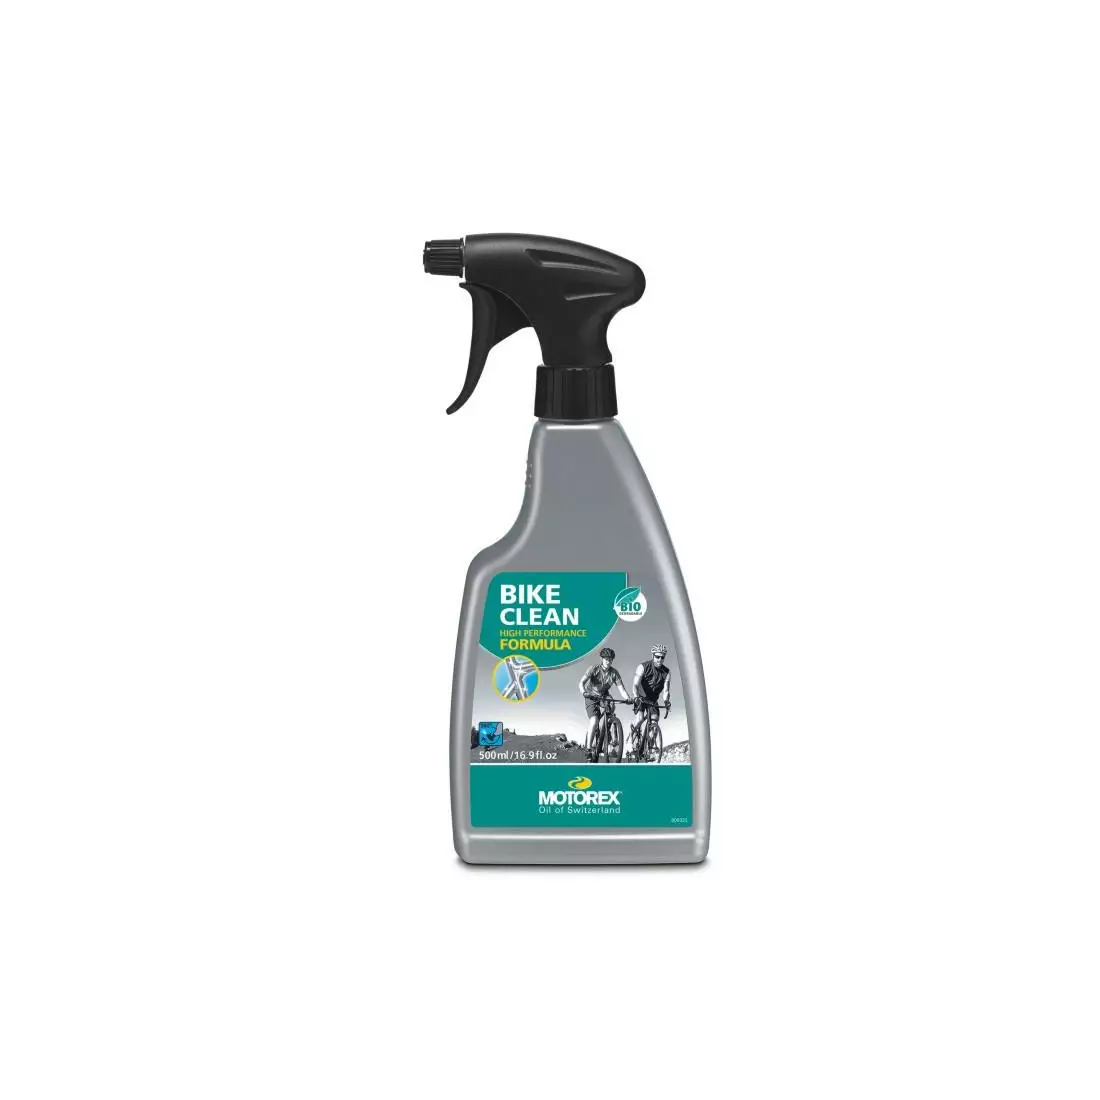 MOTOREX BIKE CLEAN előkészítés mindenféle szennyeződés tisztítására, porlasztó 500 ml